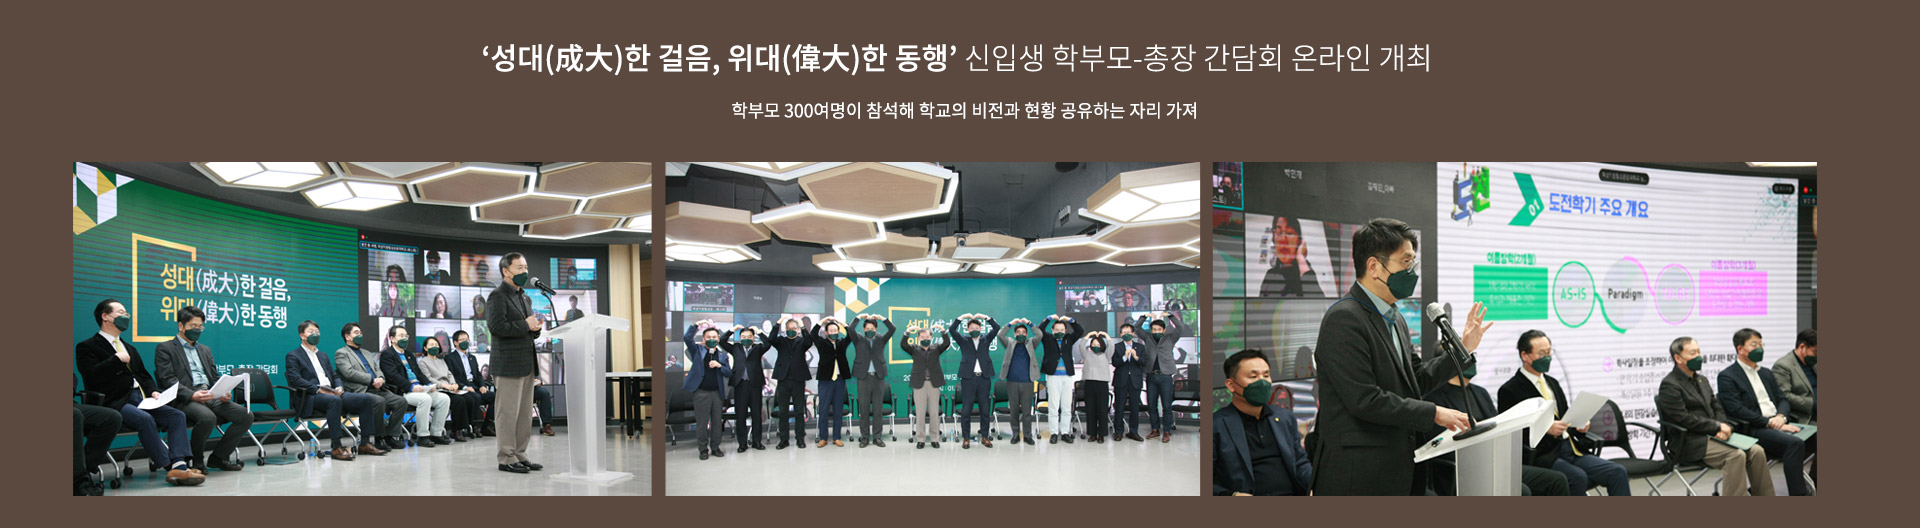 신입생 학부모-총장 간담회 온라인 개최